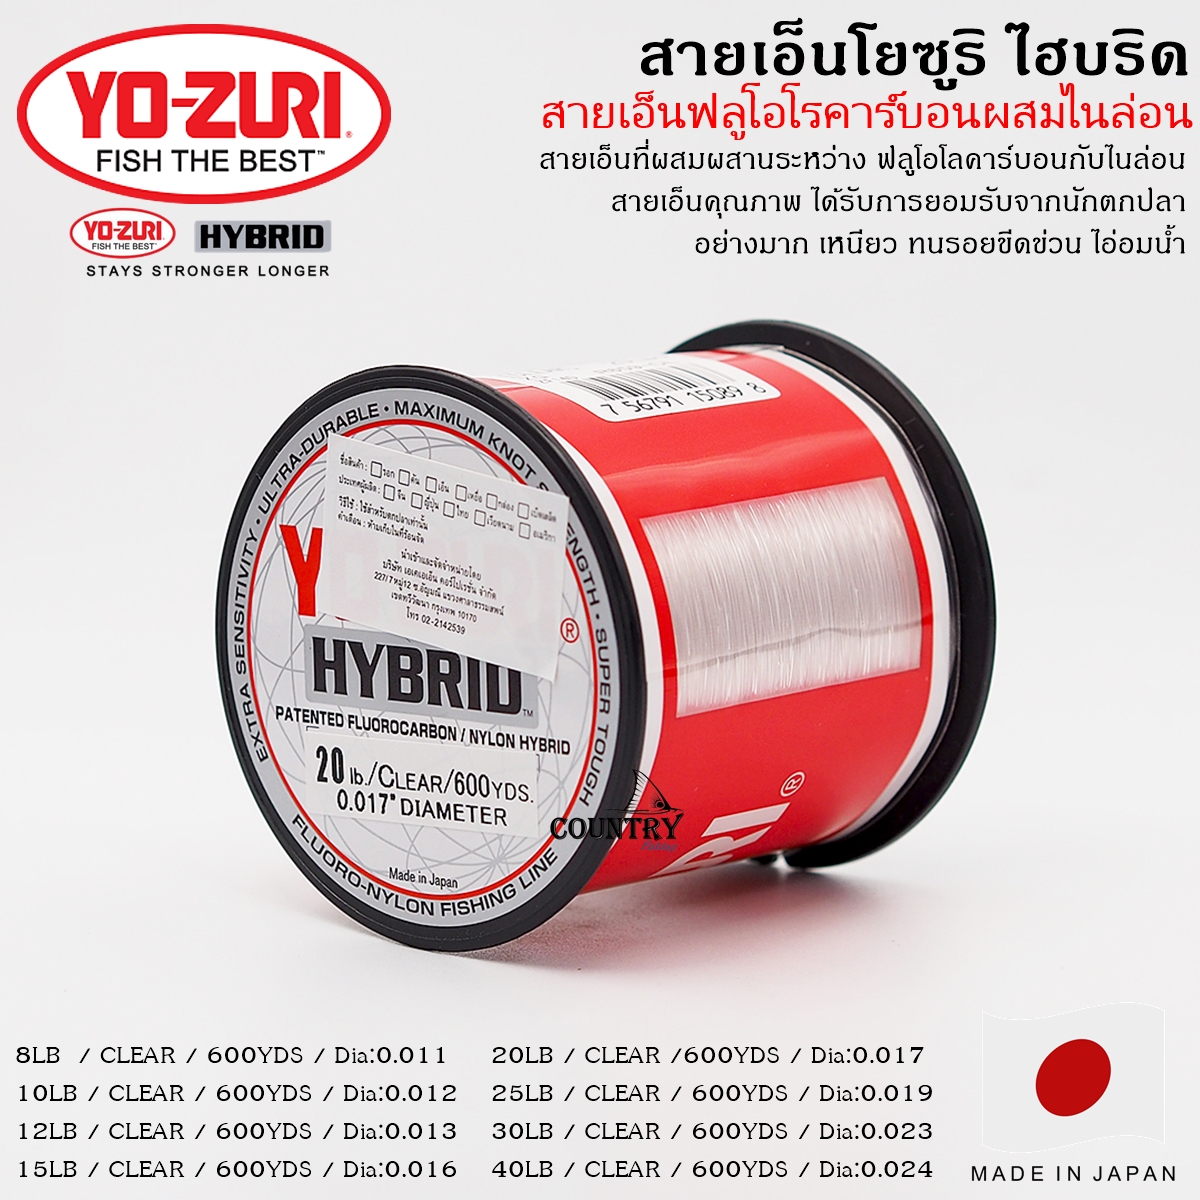 YO-ZURI Hybrid สายเอ็นโยซูริ ไฮบริด ม้วนใหญ่ ฟลูโอโรคาร์บอนผสมไนล่อน